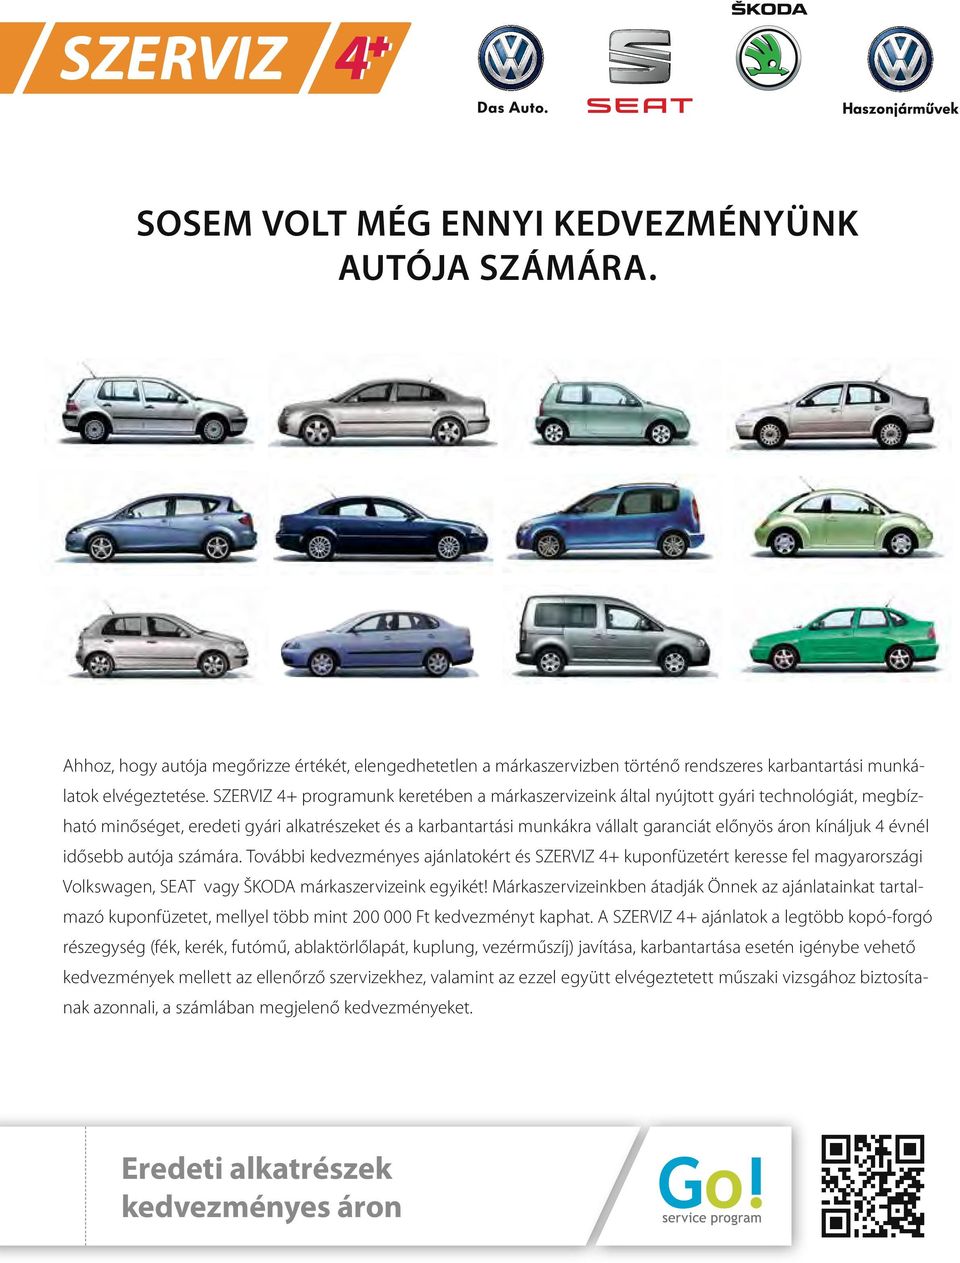 kínáljuk 4 évnél idősebb autója számára. További kedvezményes ajánlatokért és SZERVIZ 4+ kuponfüzetért keresse fel magyarországi Volkswagen, SEAT vagy ŠKODA márkaszervizeink egyikét!